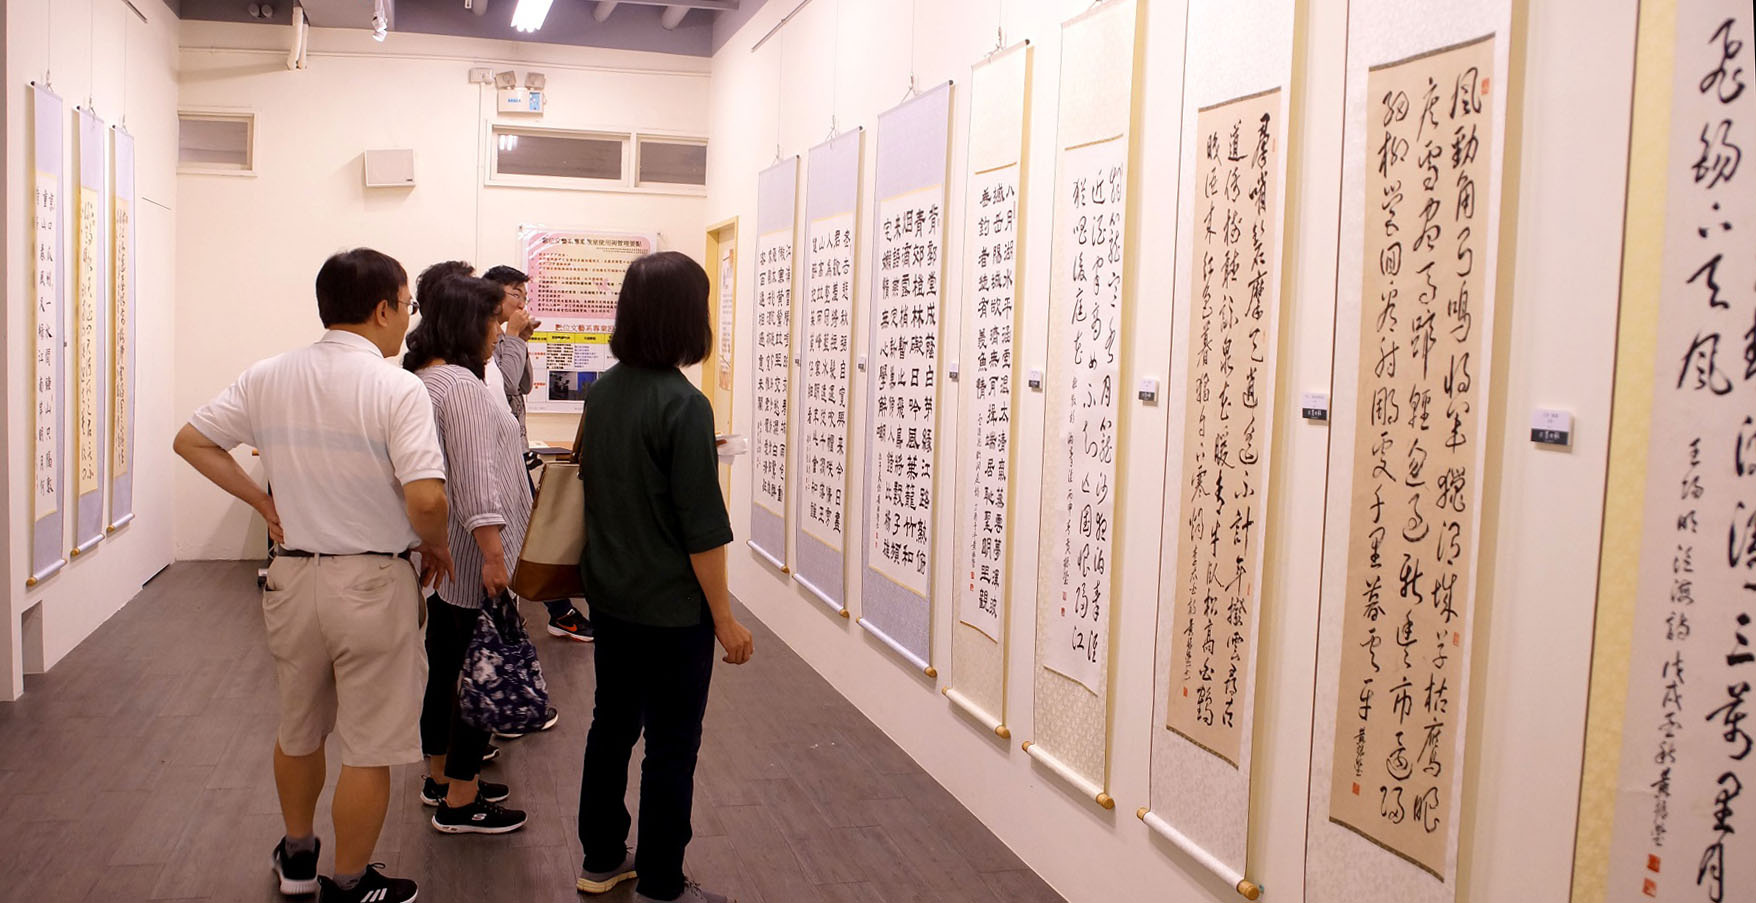 本次展出黃振瑩藝術家書法作品包含甲骨文、隸書、行書、草書及楷書，部分作品則為隨興寫出具有個人風格的字體